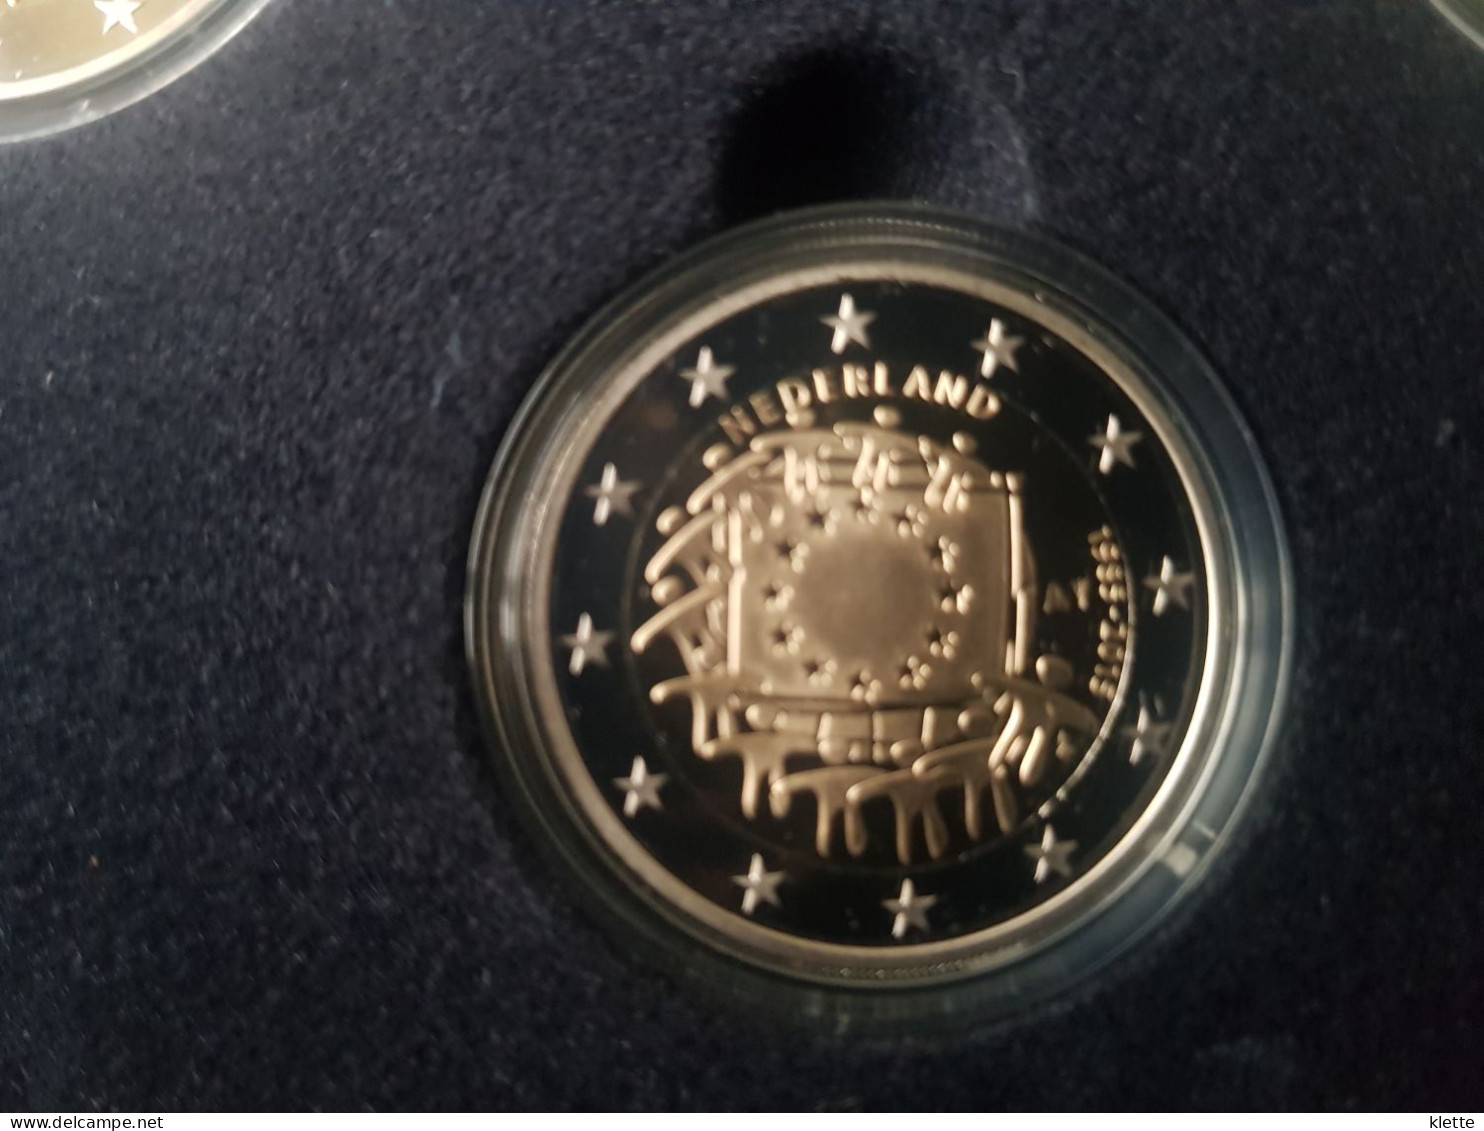 Nederland Combiset 2015 "30 jaar Europese Vlag" - 4 x 2€ proof + 2 zilveren plaatjes - !! Zelden aangeboden !!